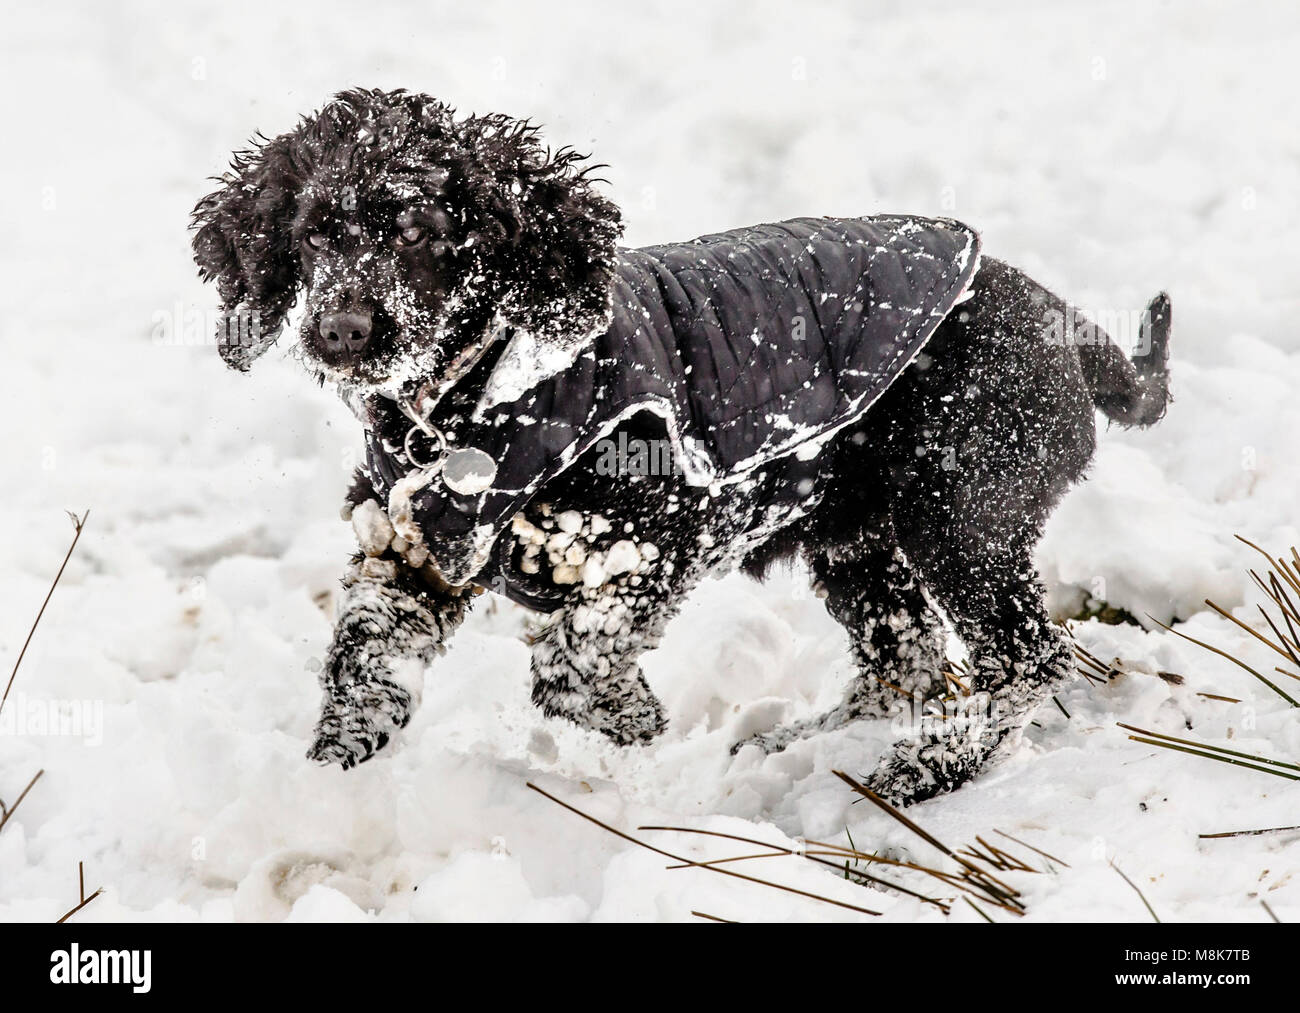 Zara, der Hund, spielt im Schnee in Chapel-en-le-Frith, Derbyshire, während der winterliche Schnapper, der als "Mini-Biest aus dem Osten" bezeichnet wird, Großbritannien im Griff behält. Stockfoto